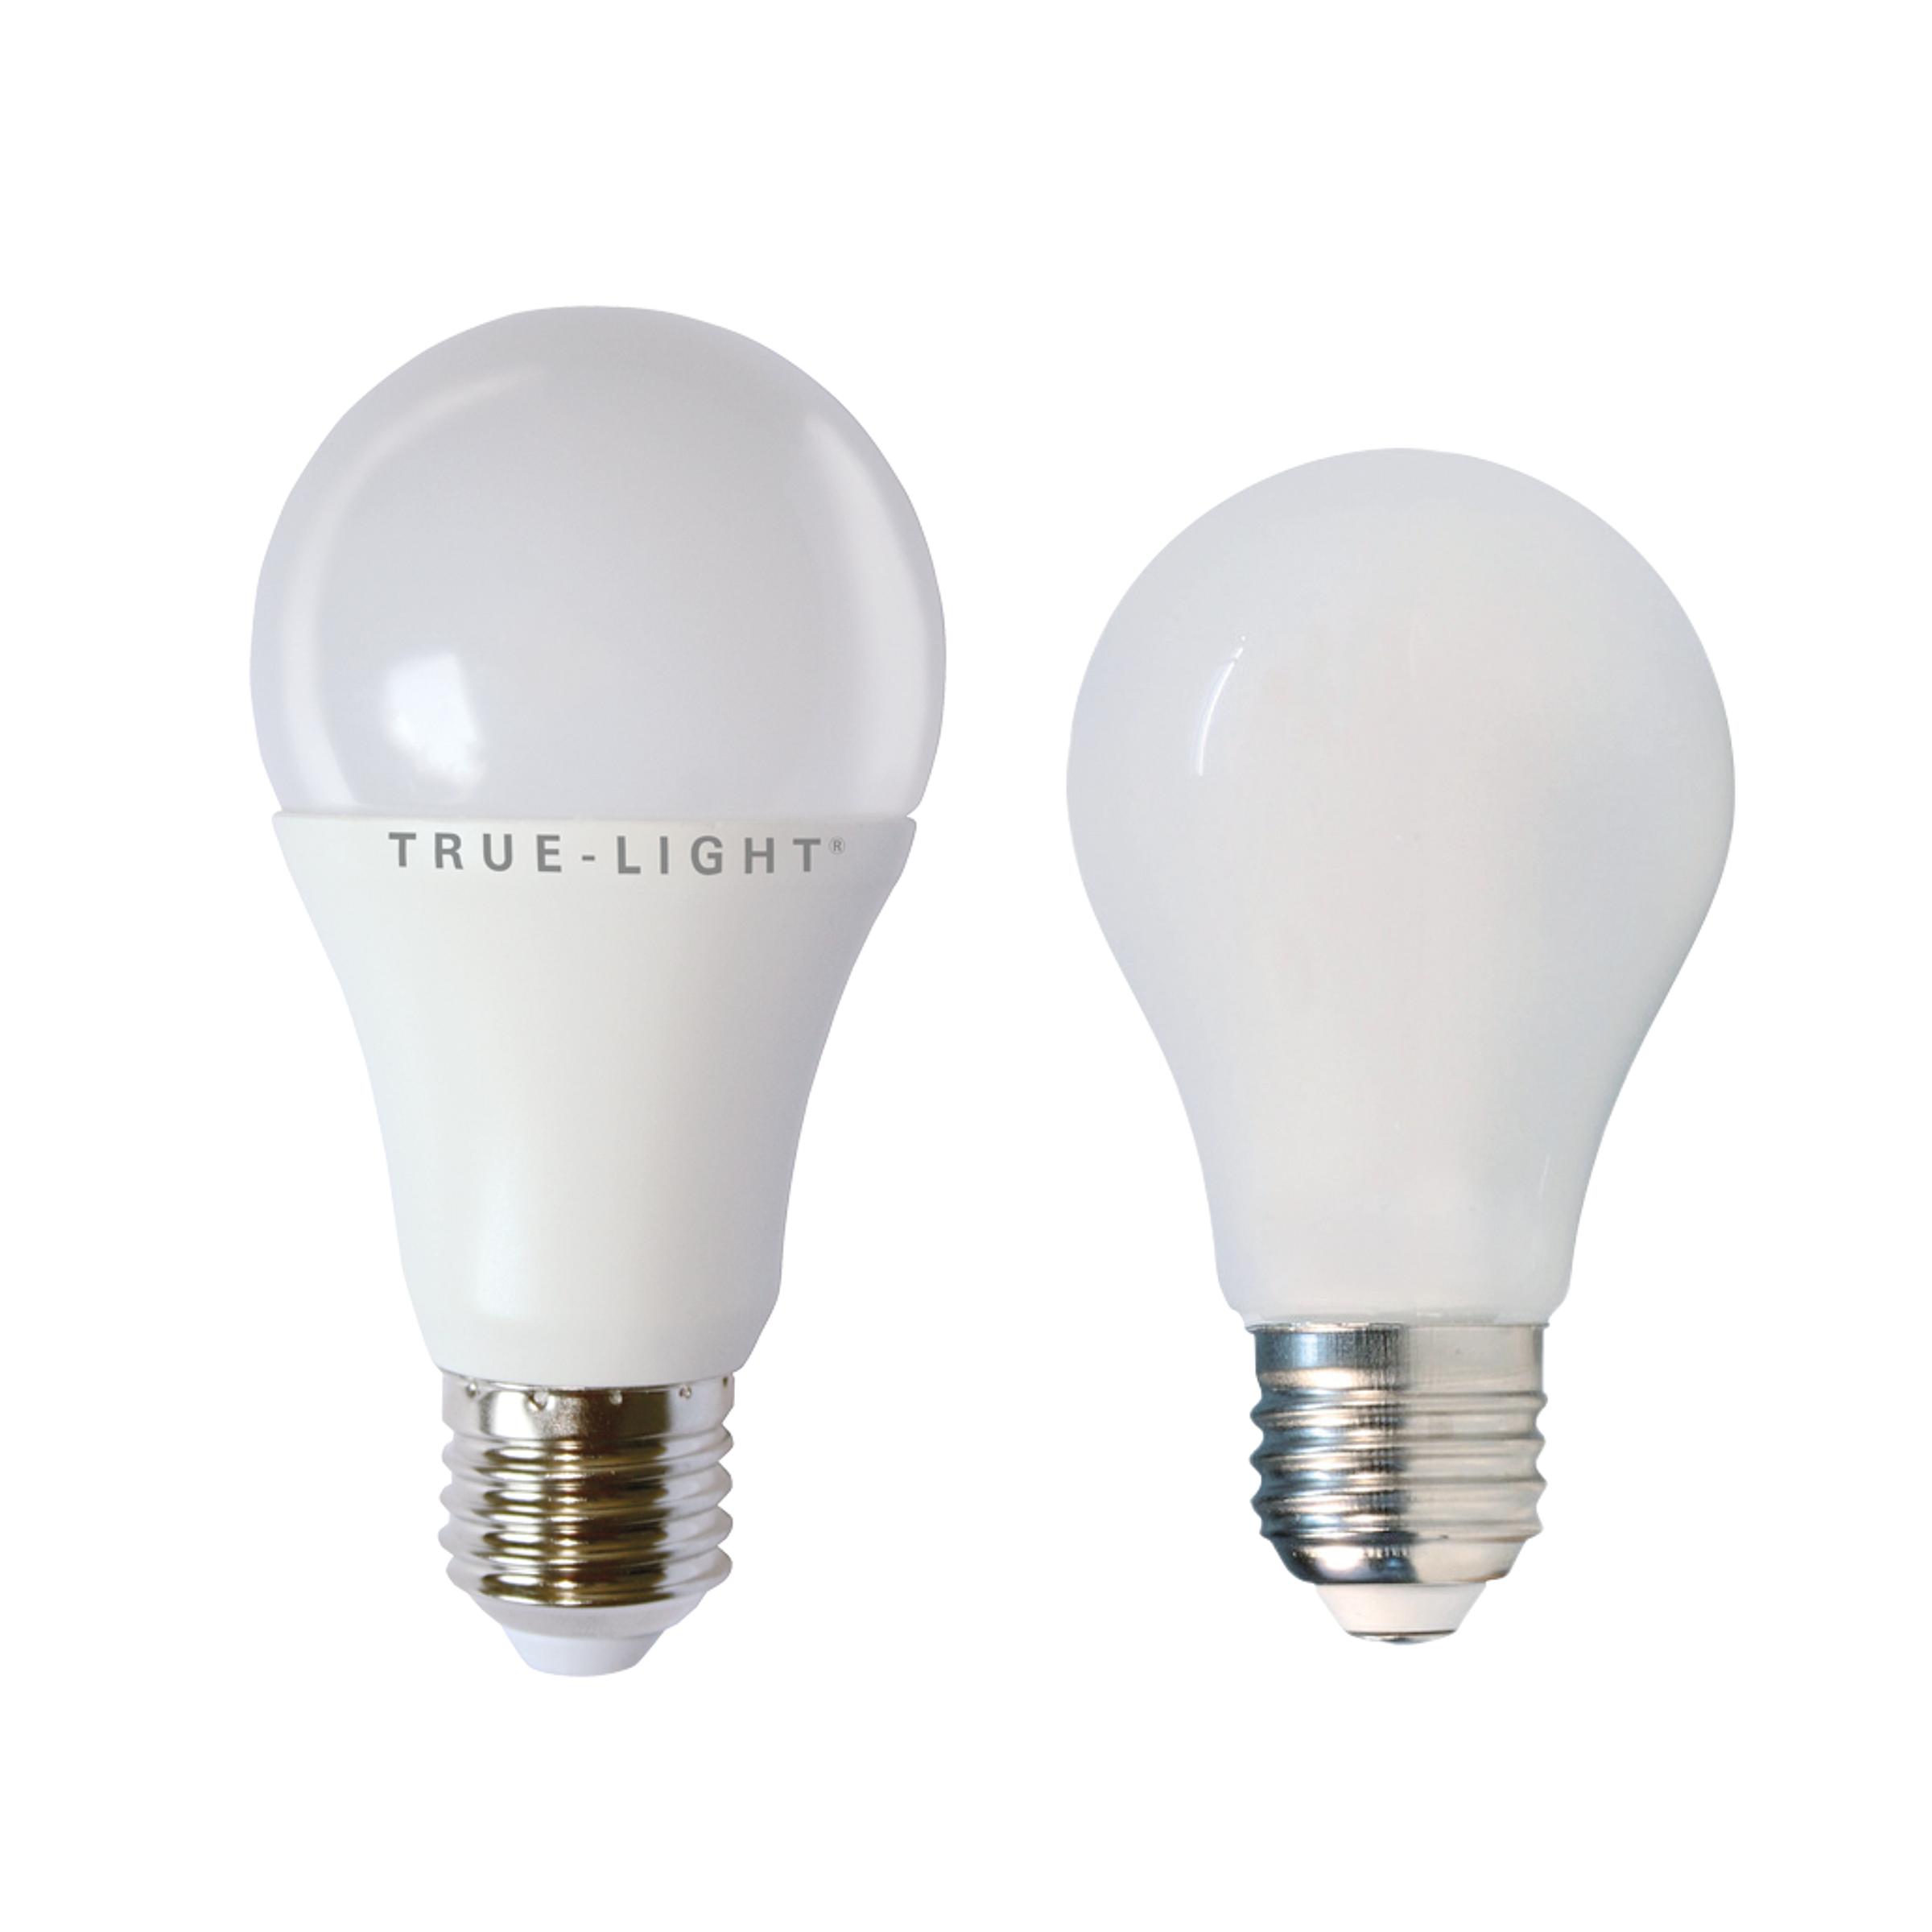 True-Light® LED-Lampe mit 3-Stufen-Dimmung, boesner - Professionelle  Künstlermaterialien und Künstlerbedarf